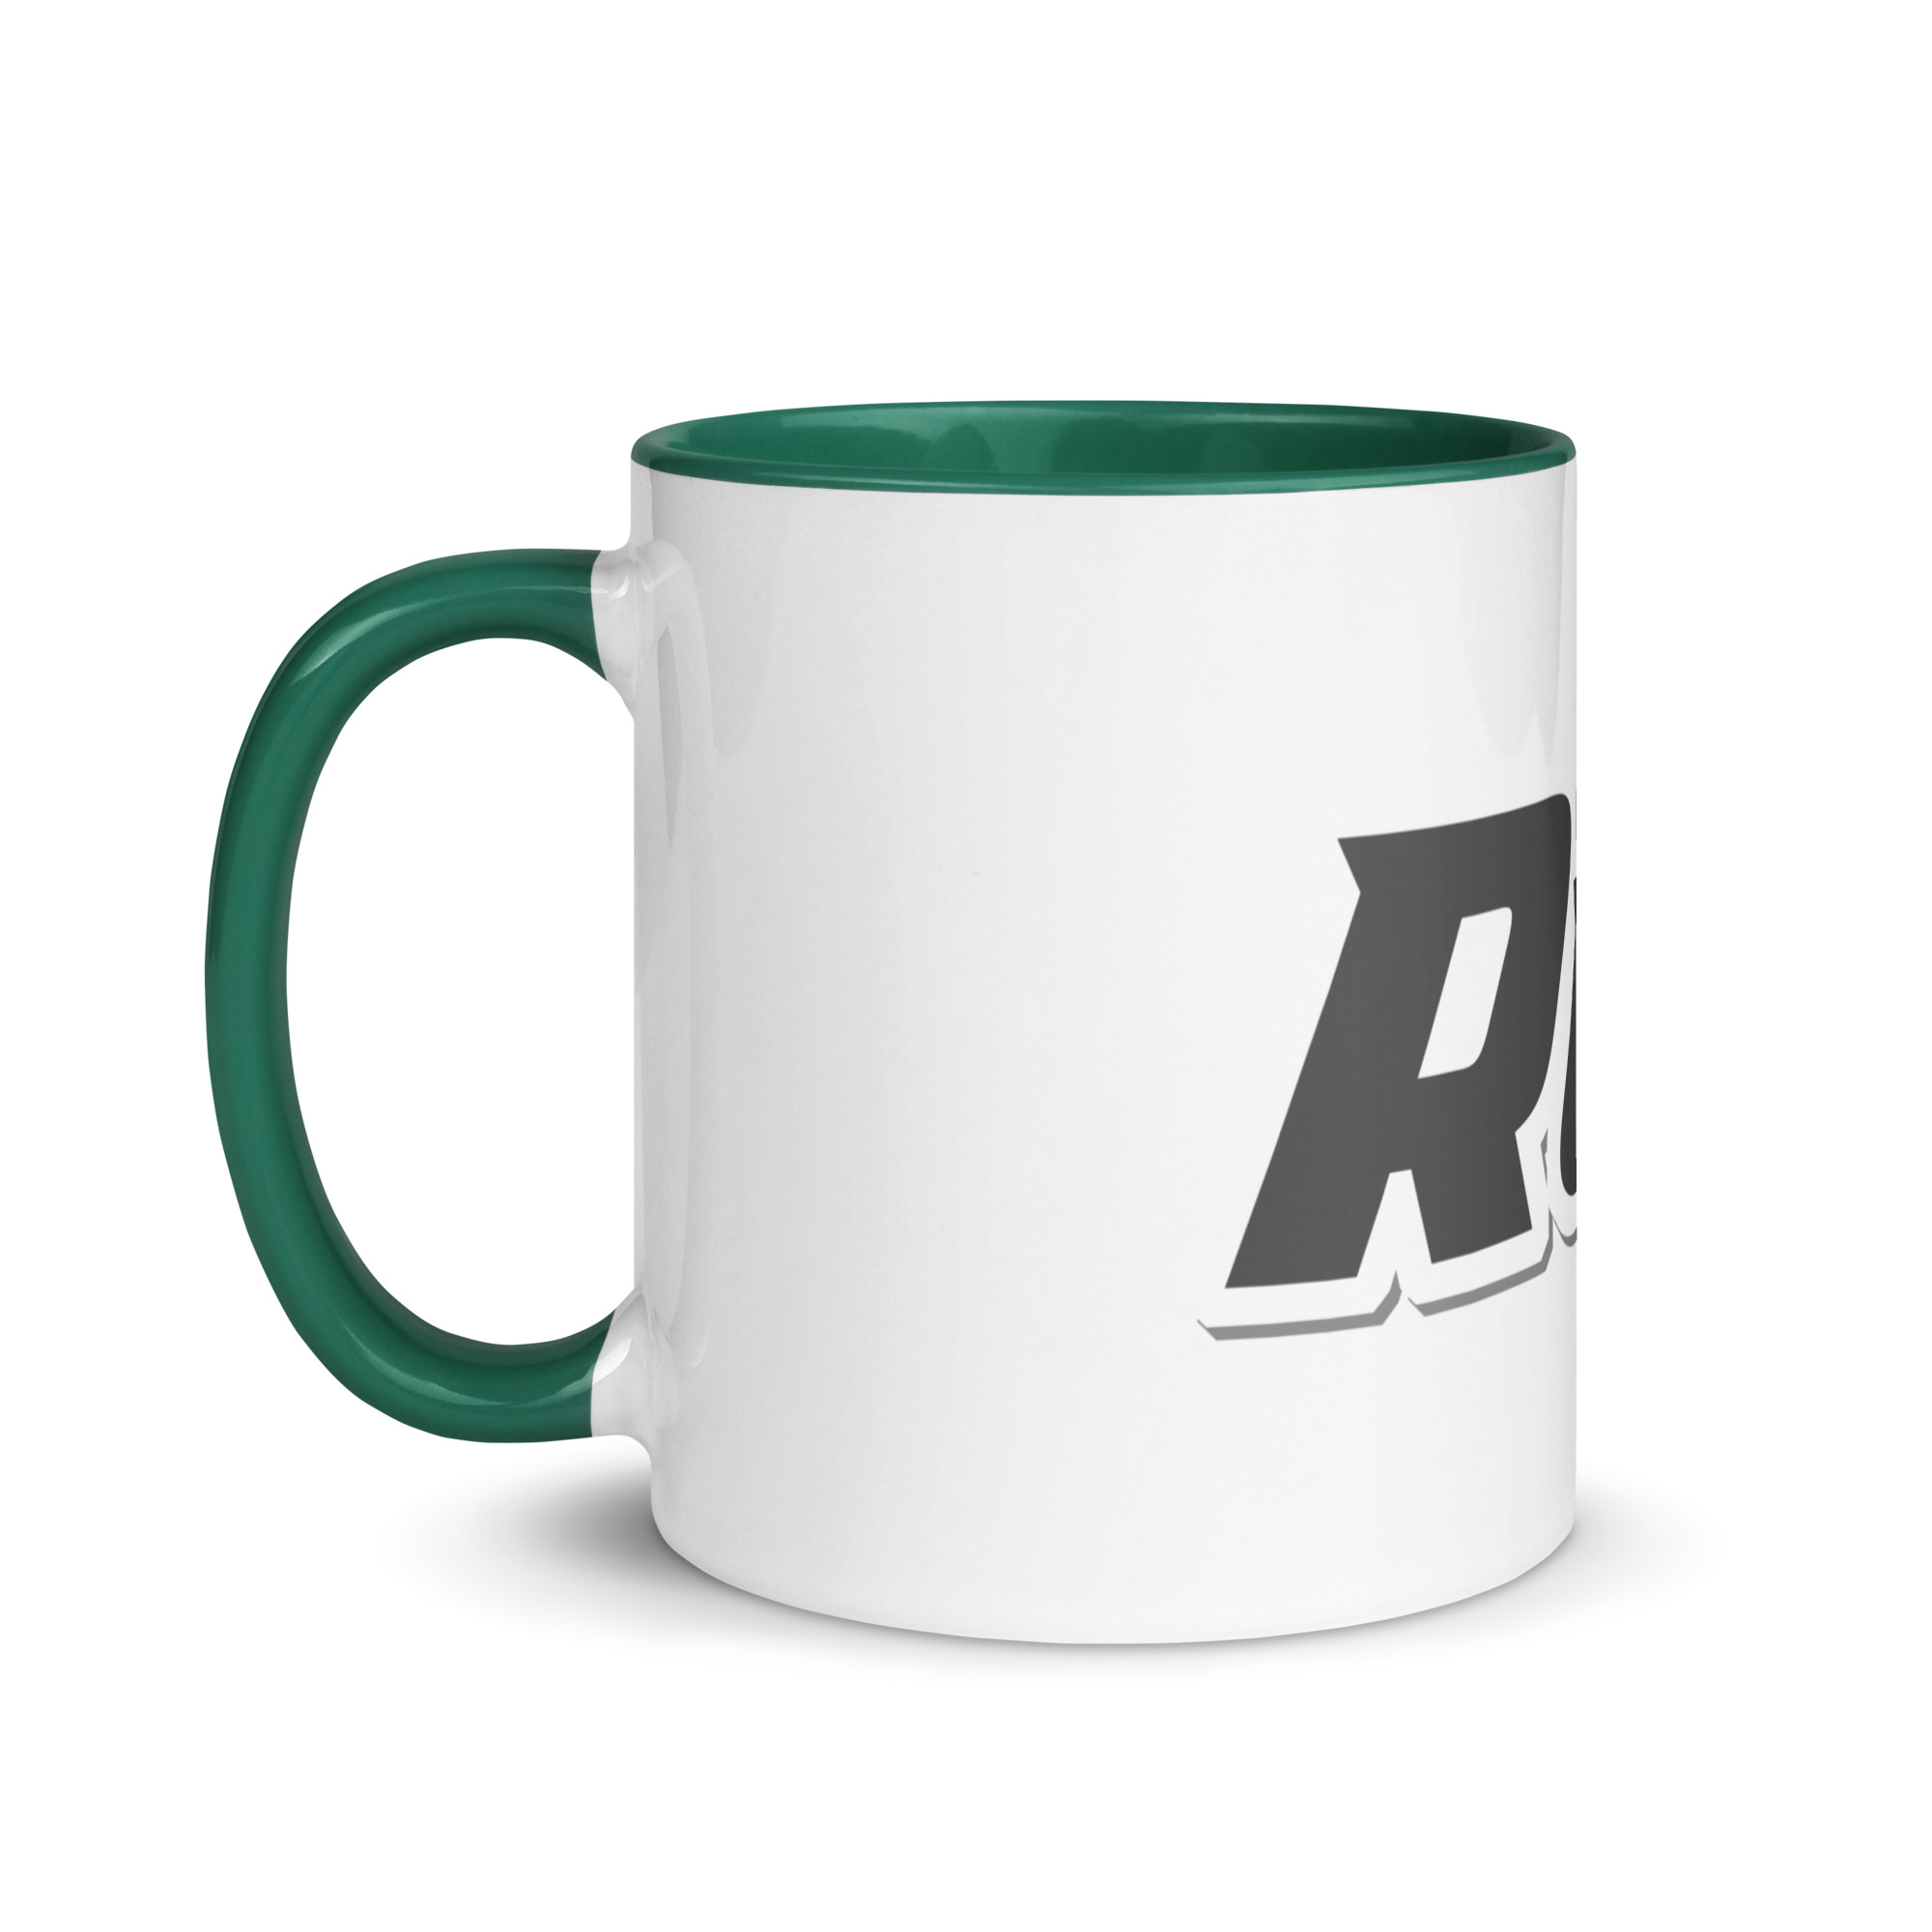 white-ceramic-mug-with-color-inside-dark-green-11-oz-left-6525b50608d60.jpg